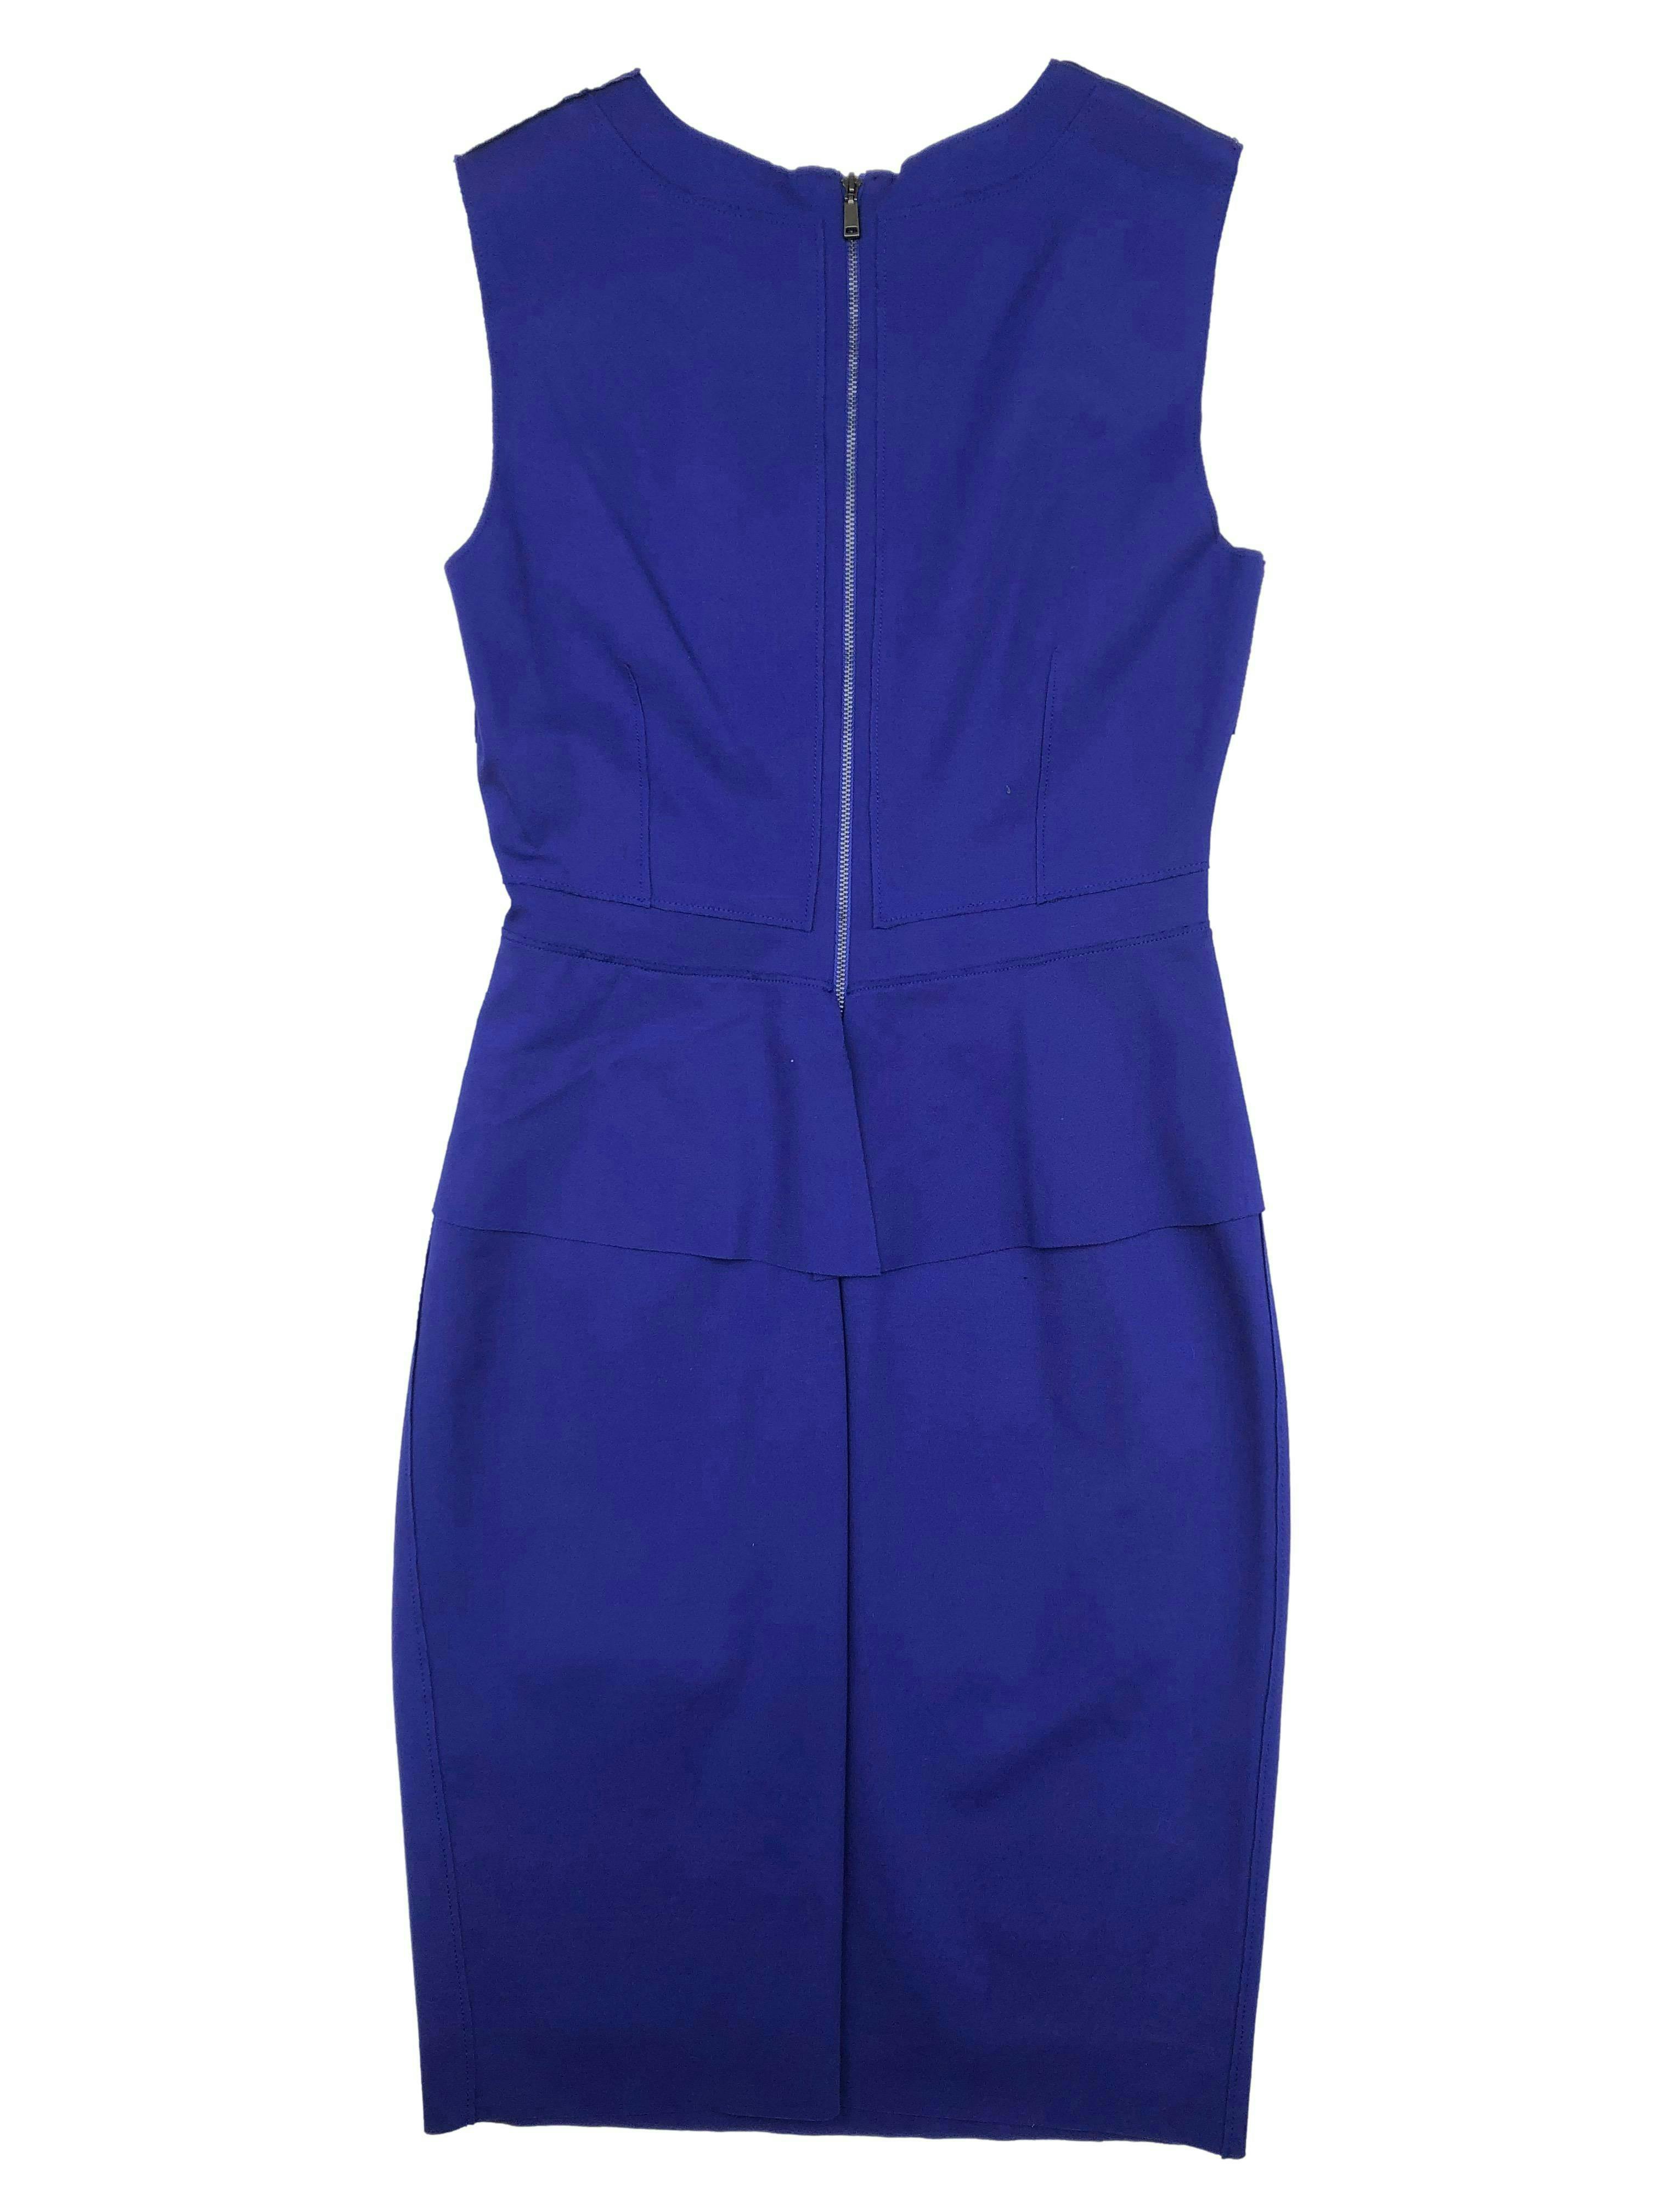 Vestido Elie Tahari azul con costuras externas, peplum, cierre en la espalda y forro, tela gruesa stretch. Busto 90cm Cintura 72cm Largo 99cm